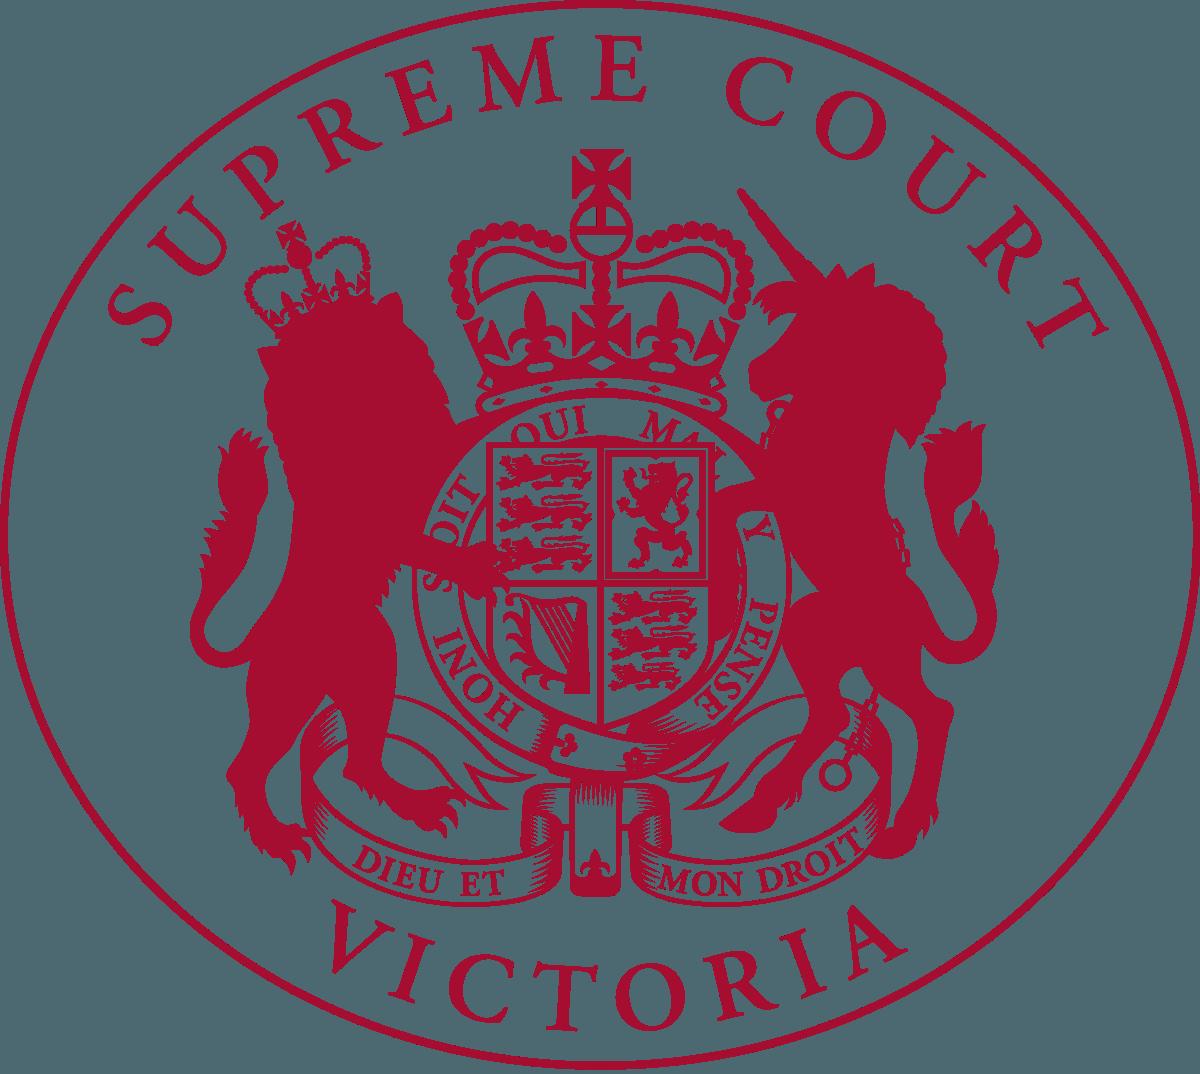 Supreme Supreme Court with Logo - Supreme Court of Victoria